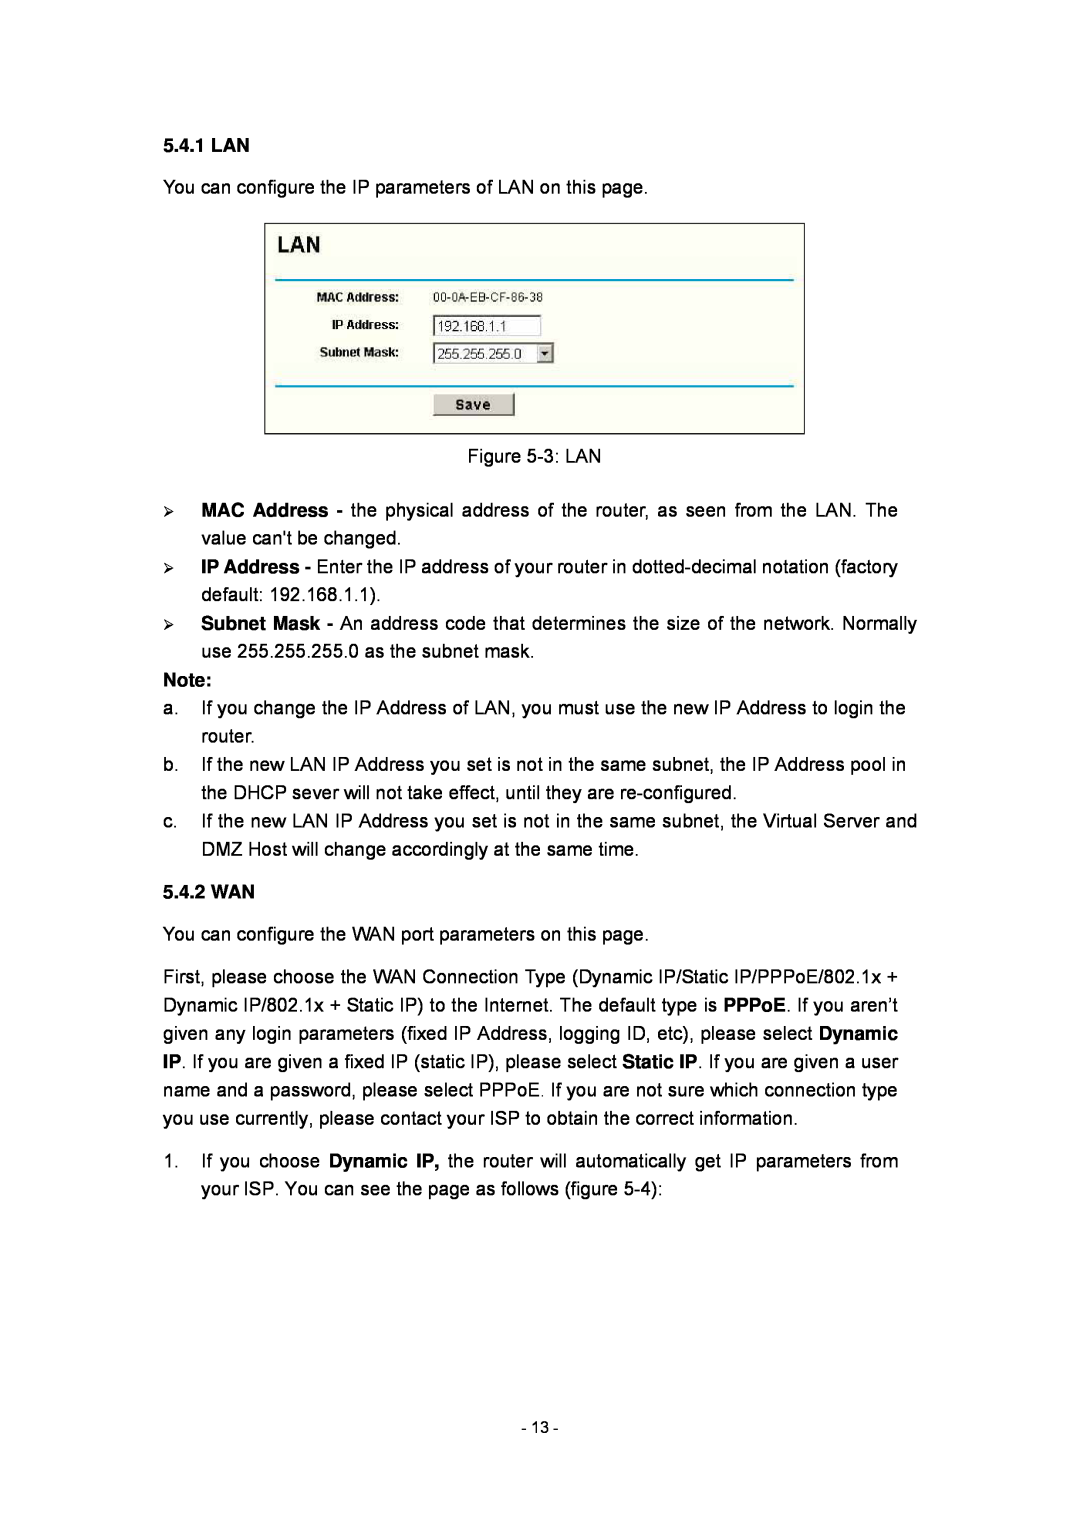 Olitec RW400SG manual 5.4.1 LAN, 5.4.2 WAN 